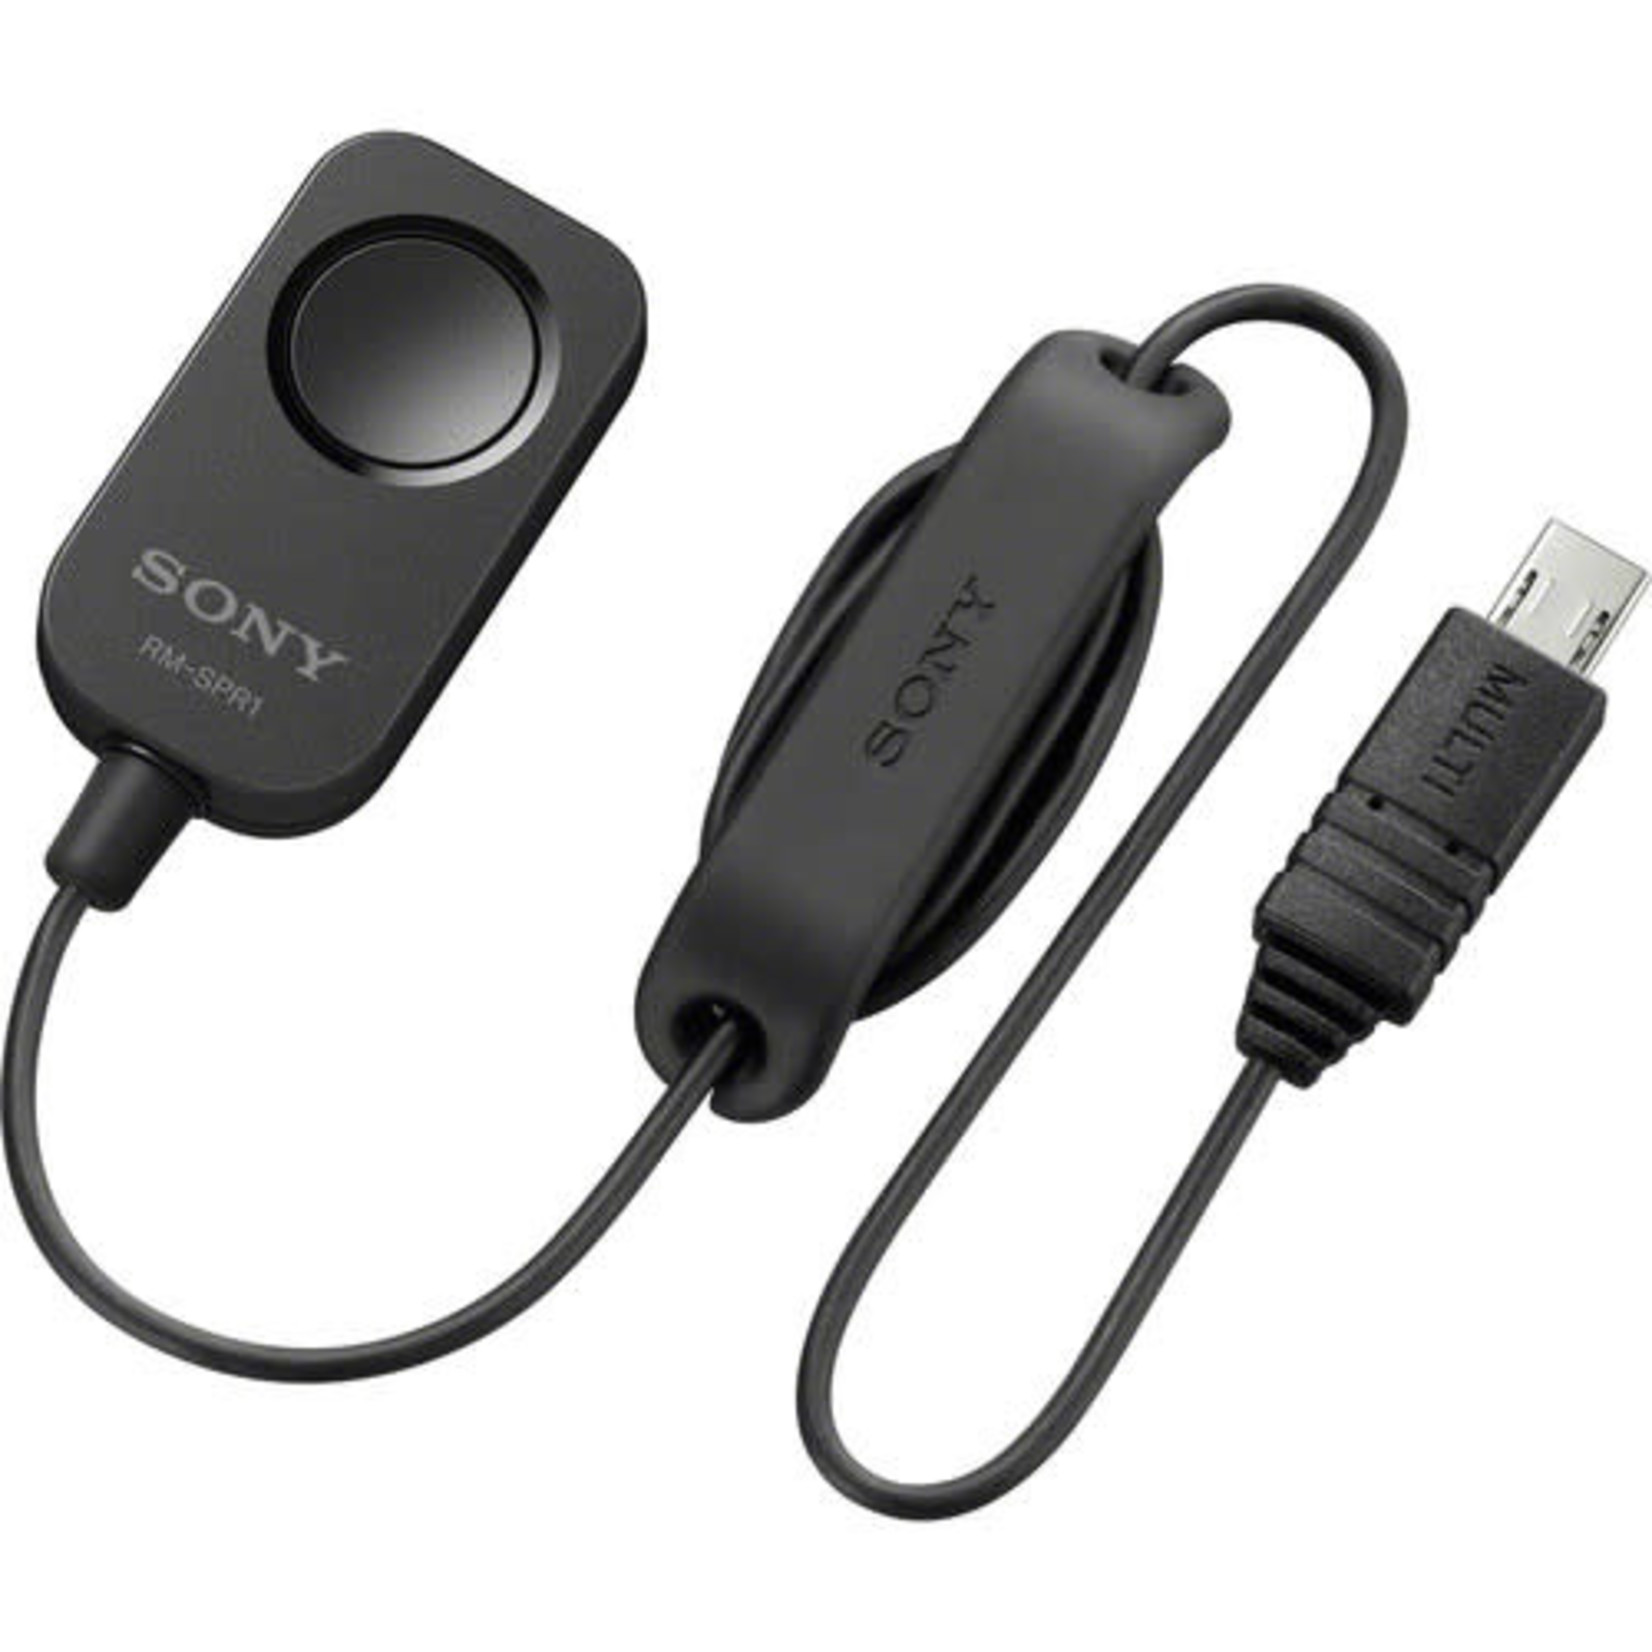 Sony Sony RM-SPR1 Remote Commander